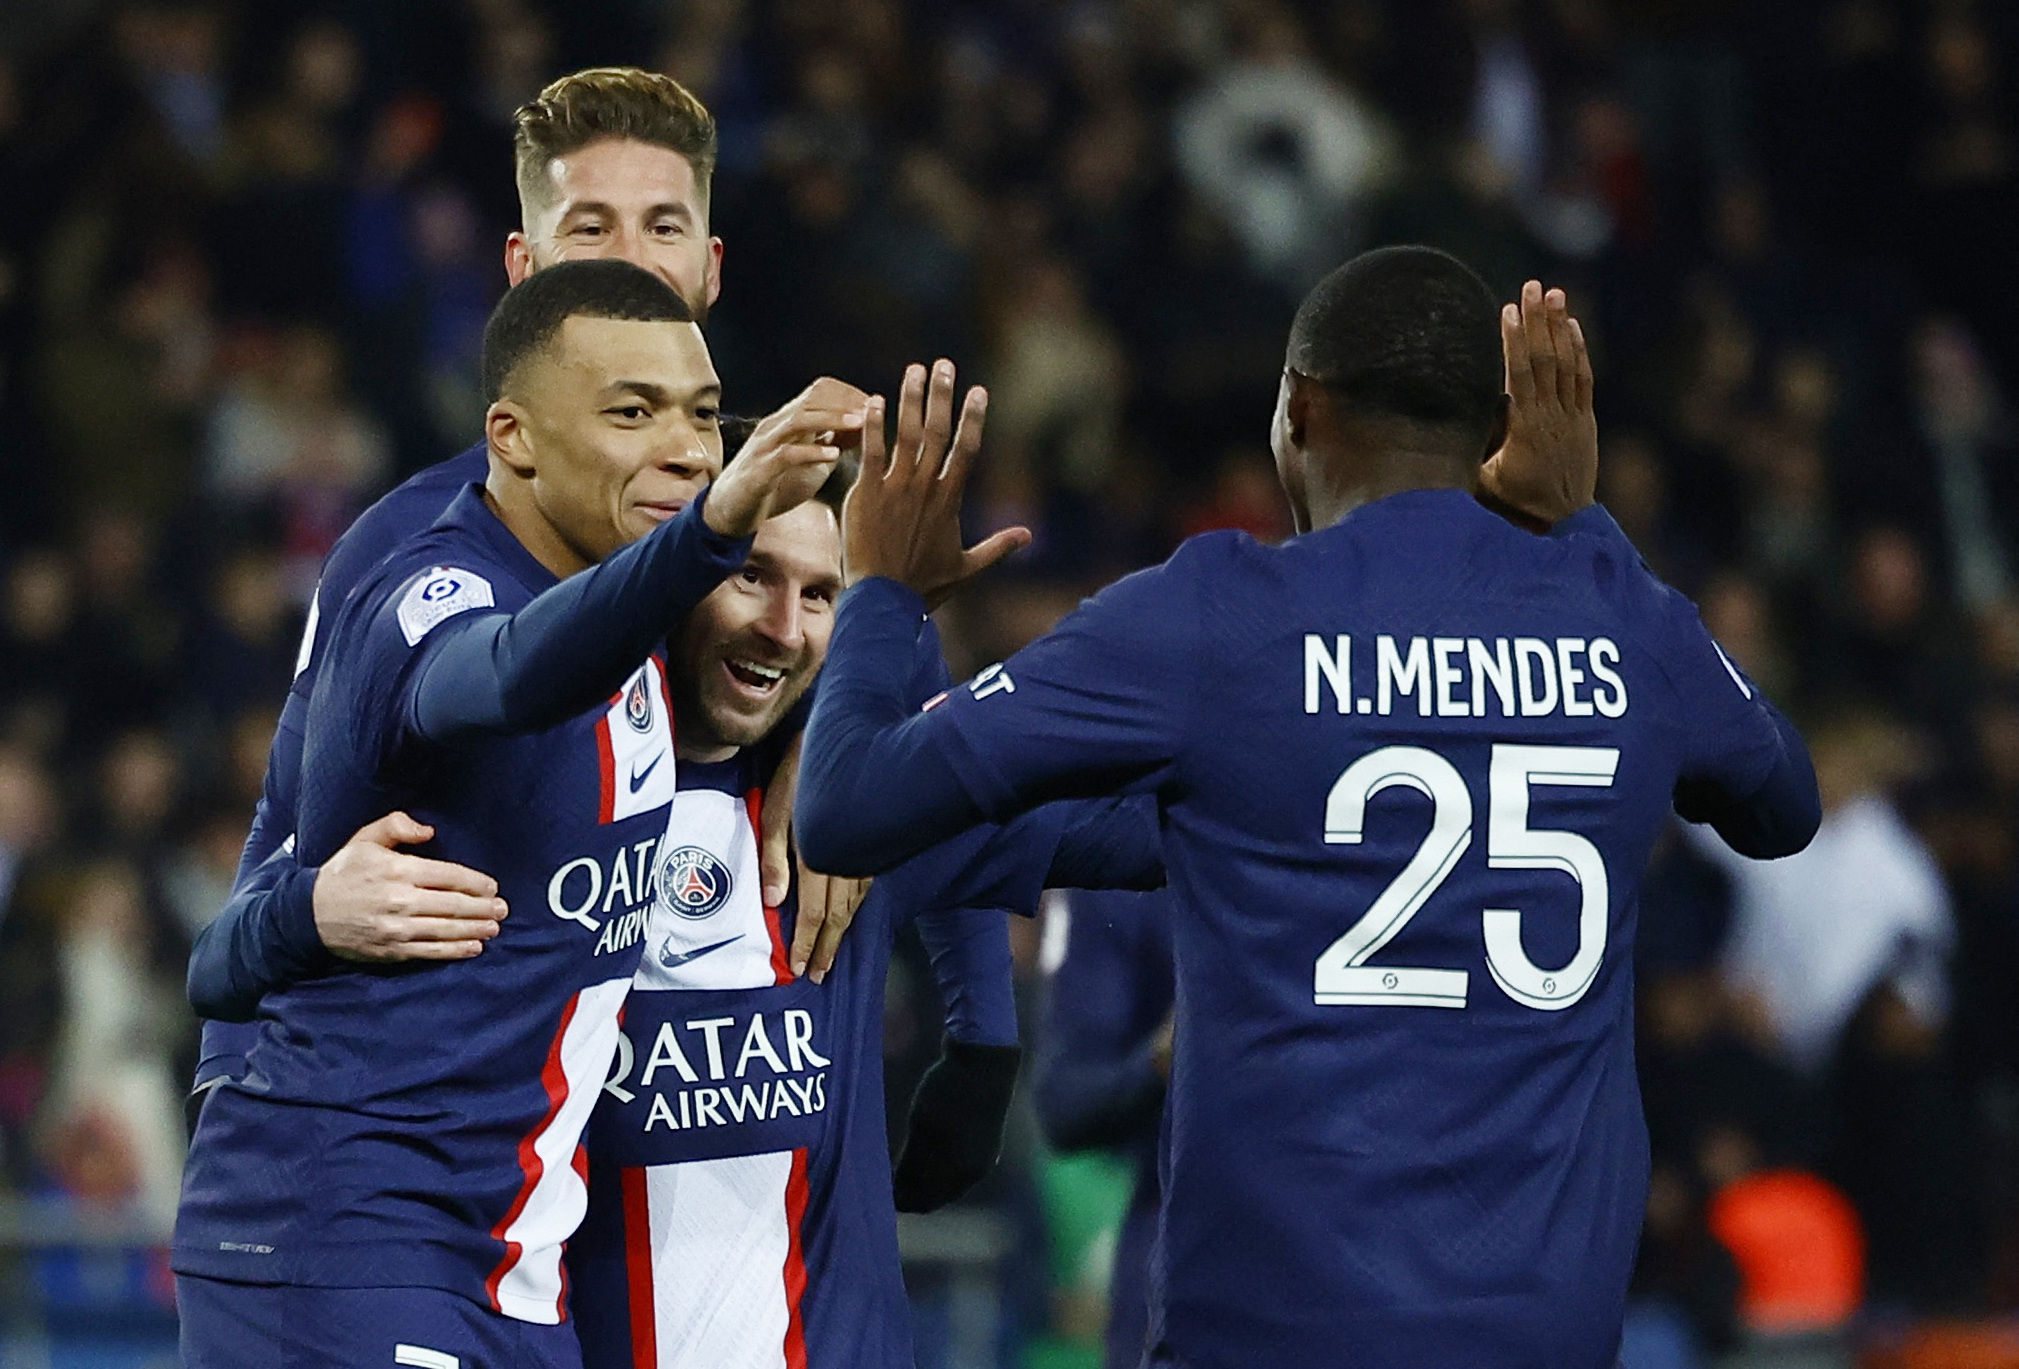 Mbappé y Messi, abrazados y unidos para llevar al PSG a la victoria frente a Nantes por la Ligue 1 (REUTERS/Sarah Meyssonnier)